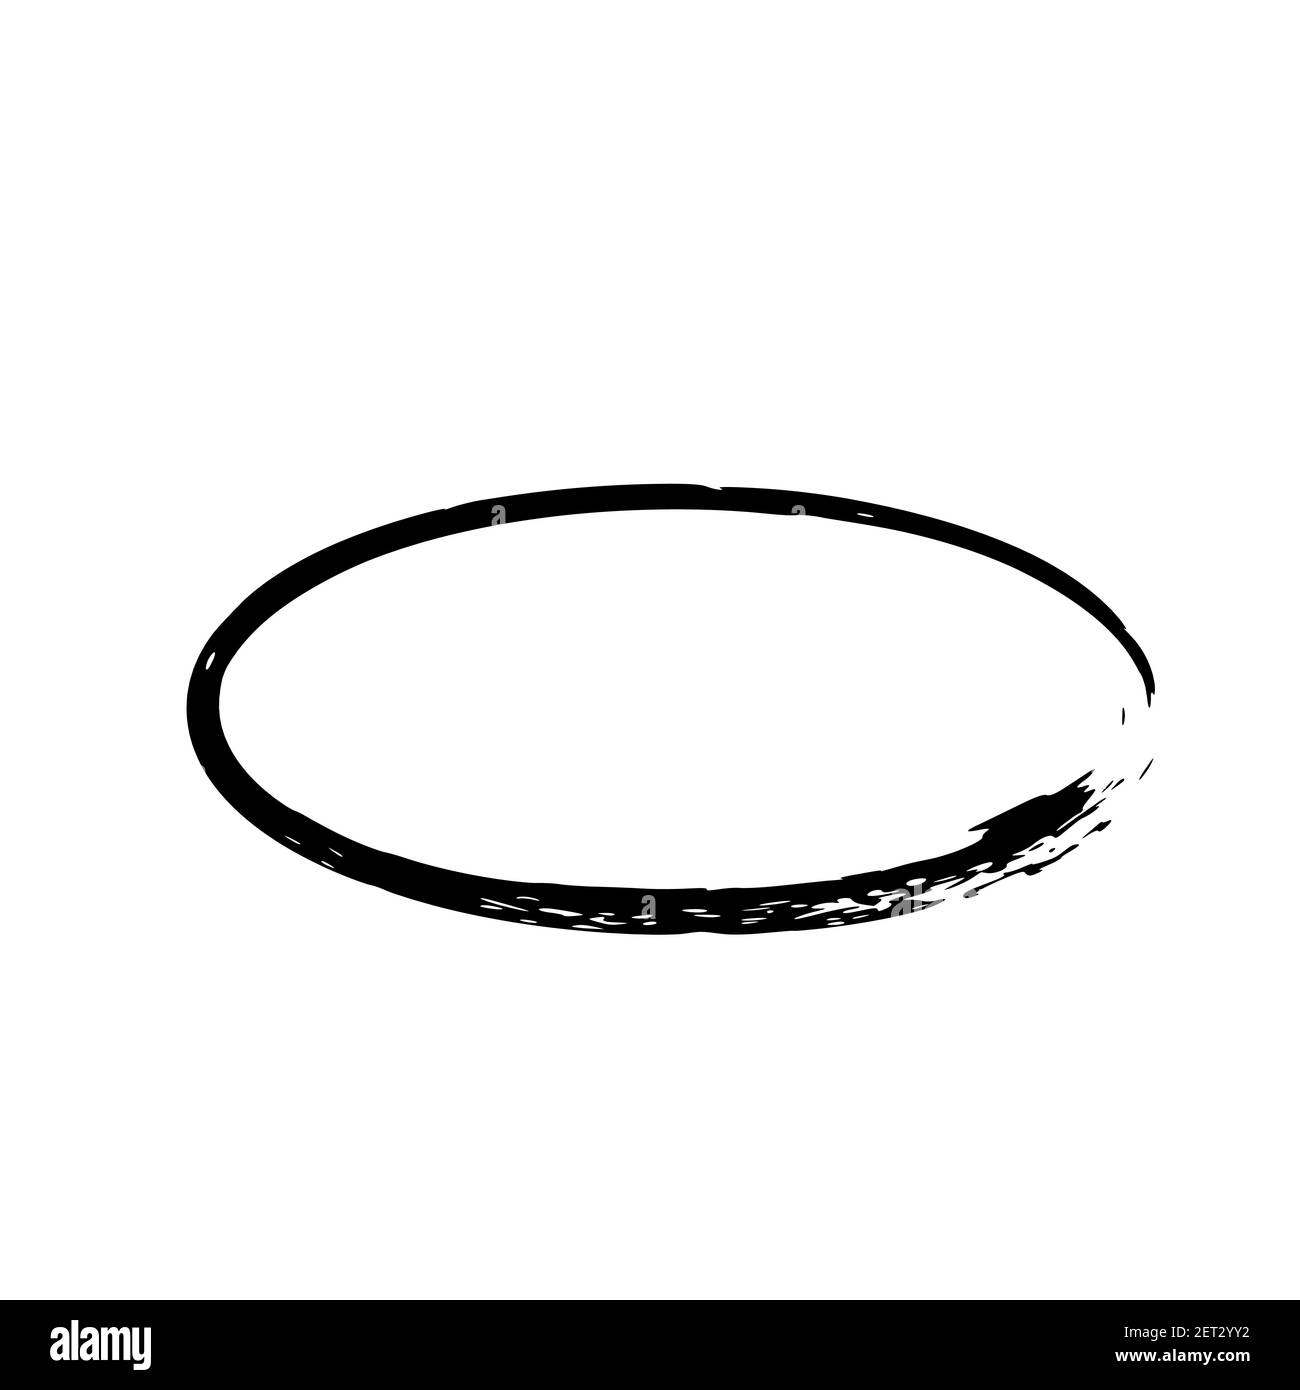 Cornice grunge ovale isolata su sfondo bianco. Bordo nero dell'inchiostro ellisse. Illustrazione vettoriale. Illustrazione Vettoriale